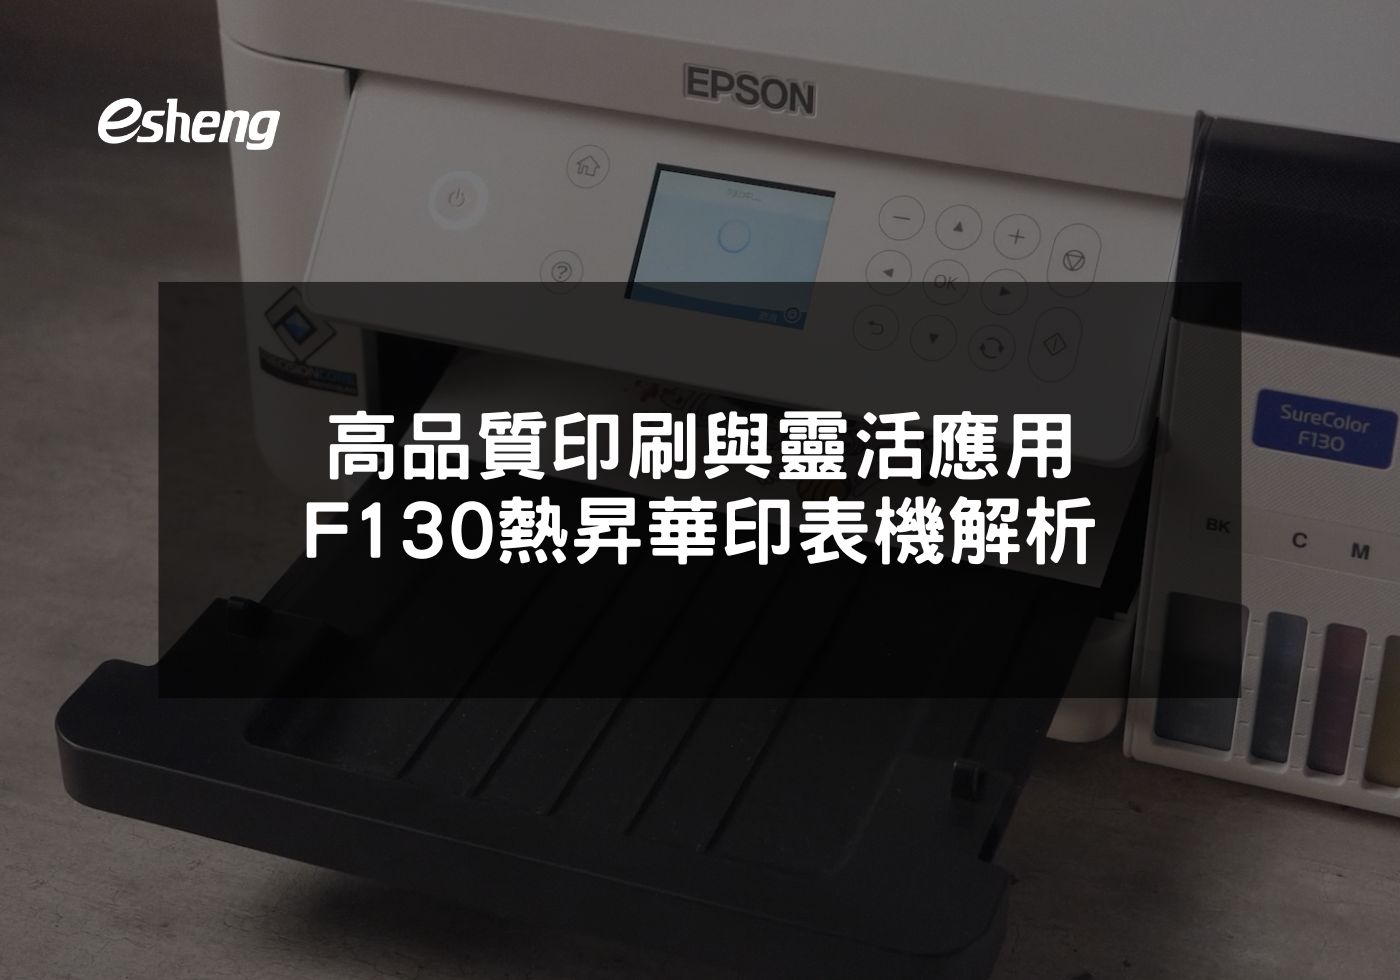 高品質印刷與環保技術的EPSON F130熱昇華印表機